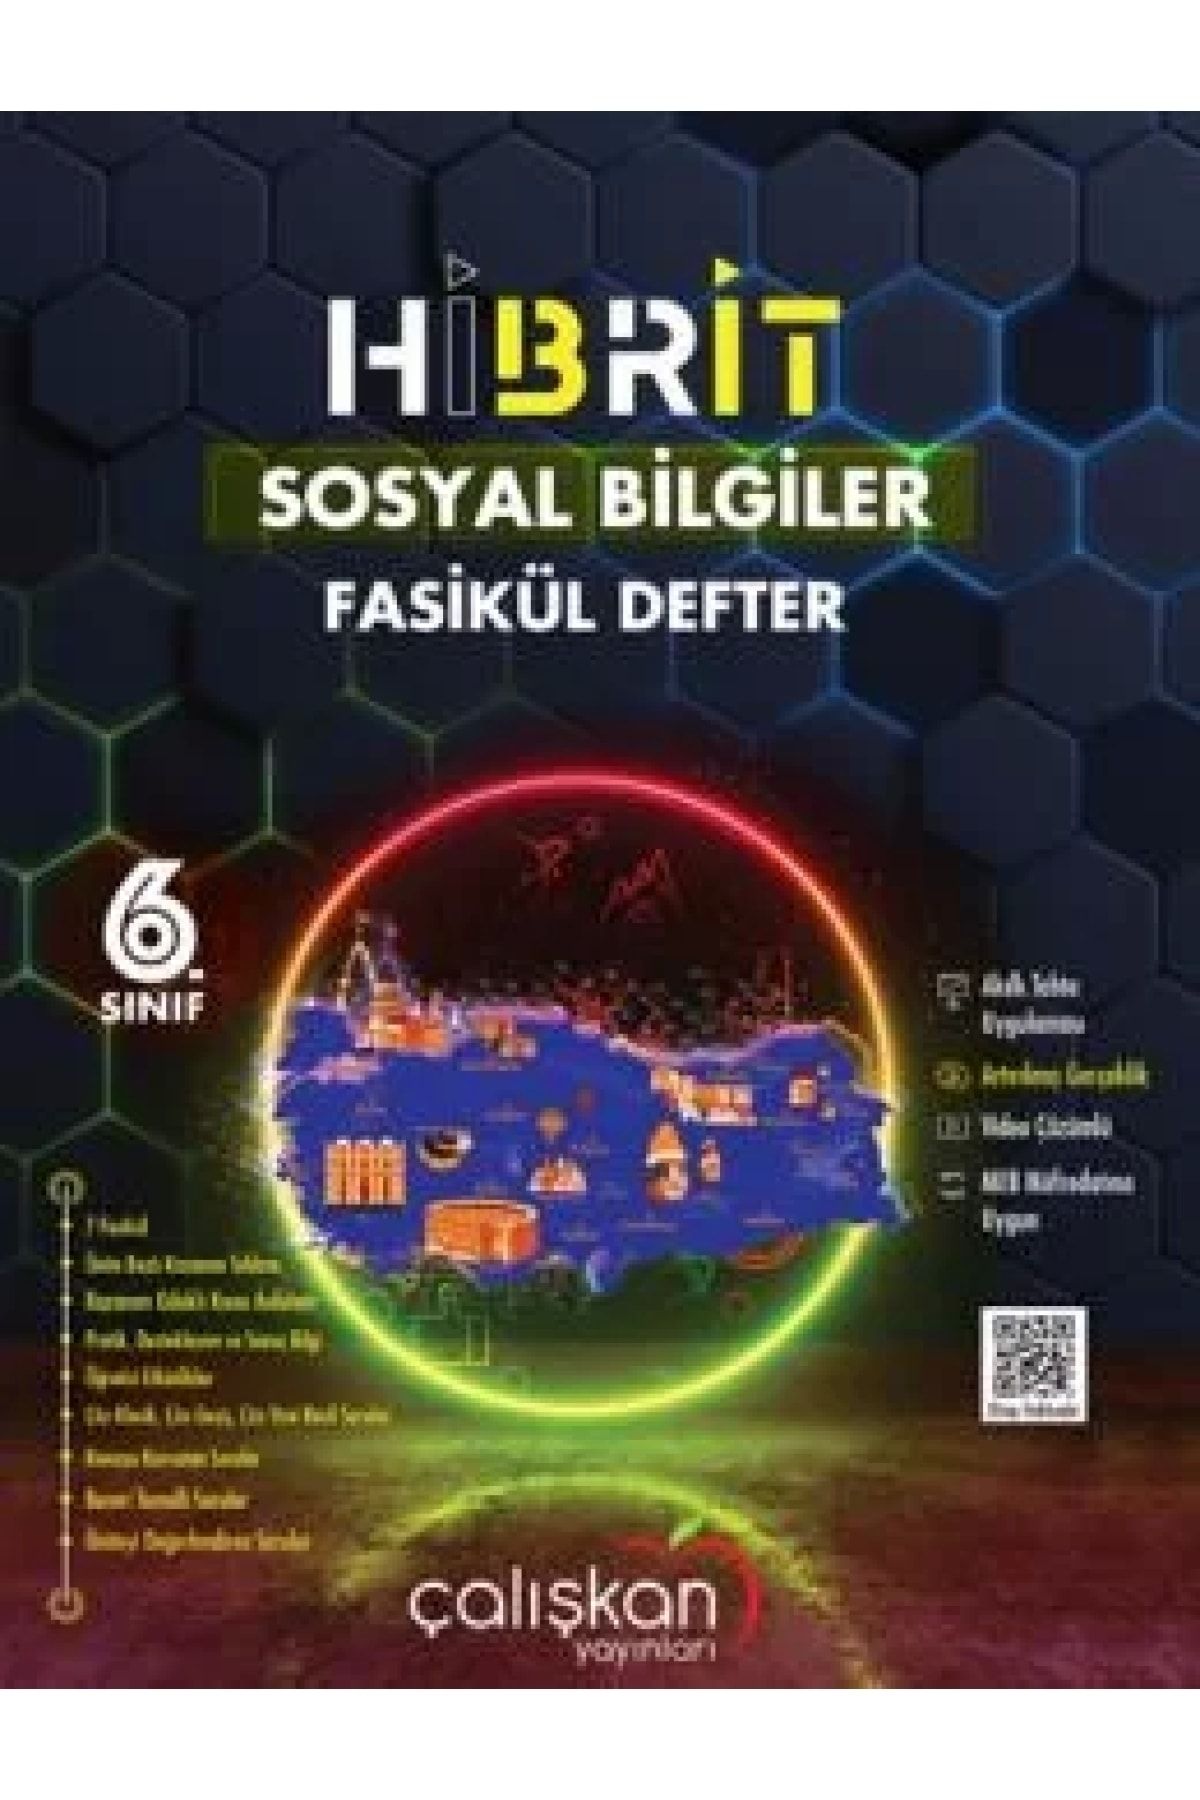 Çalışkan Yayınları 6.sınıf Hibrit Fasikül Defter / Sosyal Bilgiler